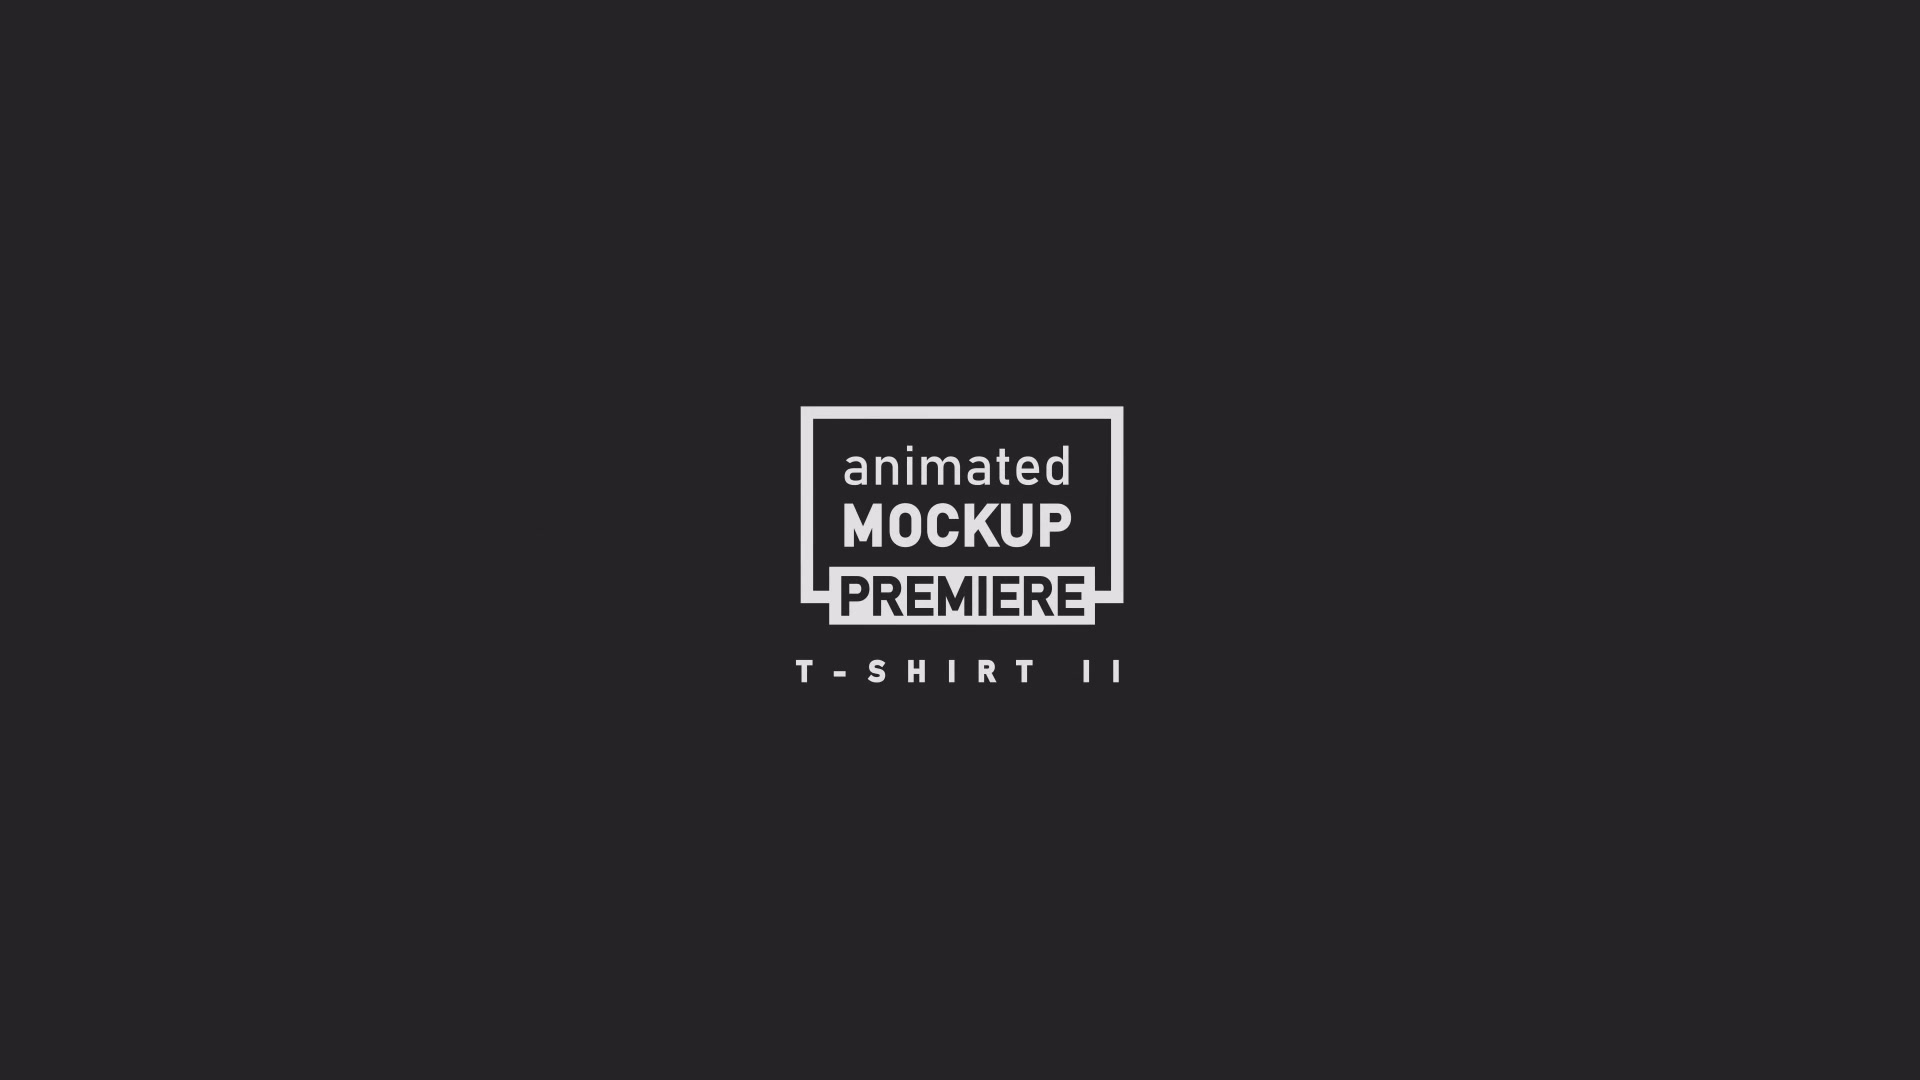 T shirt II 5 Scenes Mockup Template Animated Mockup PREMIERE Videohive 34396807 Premiere Pro Image 13